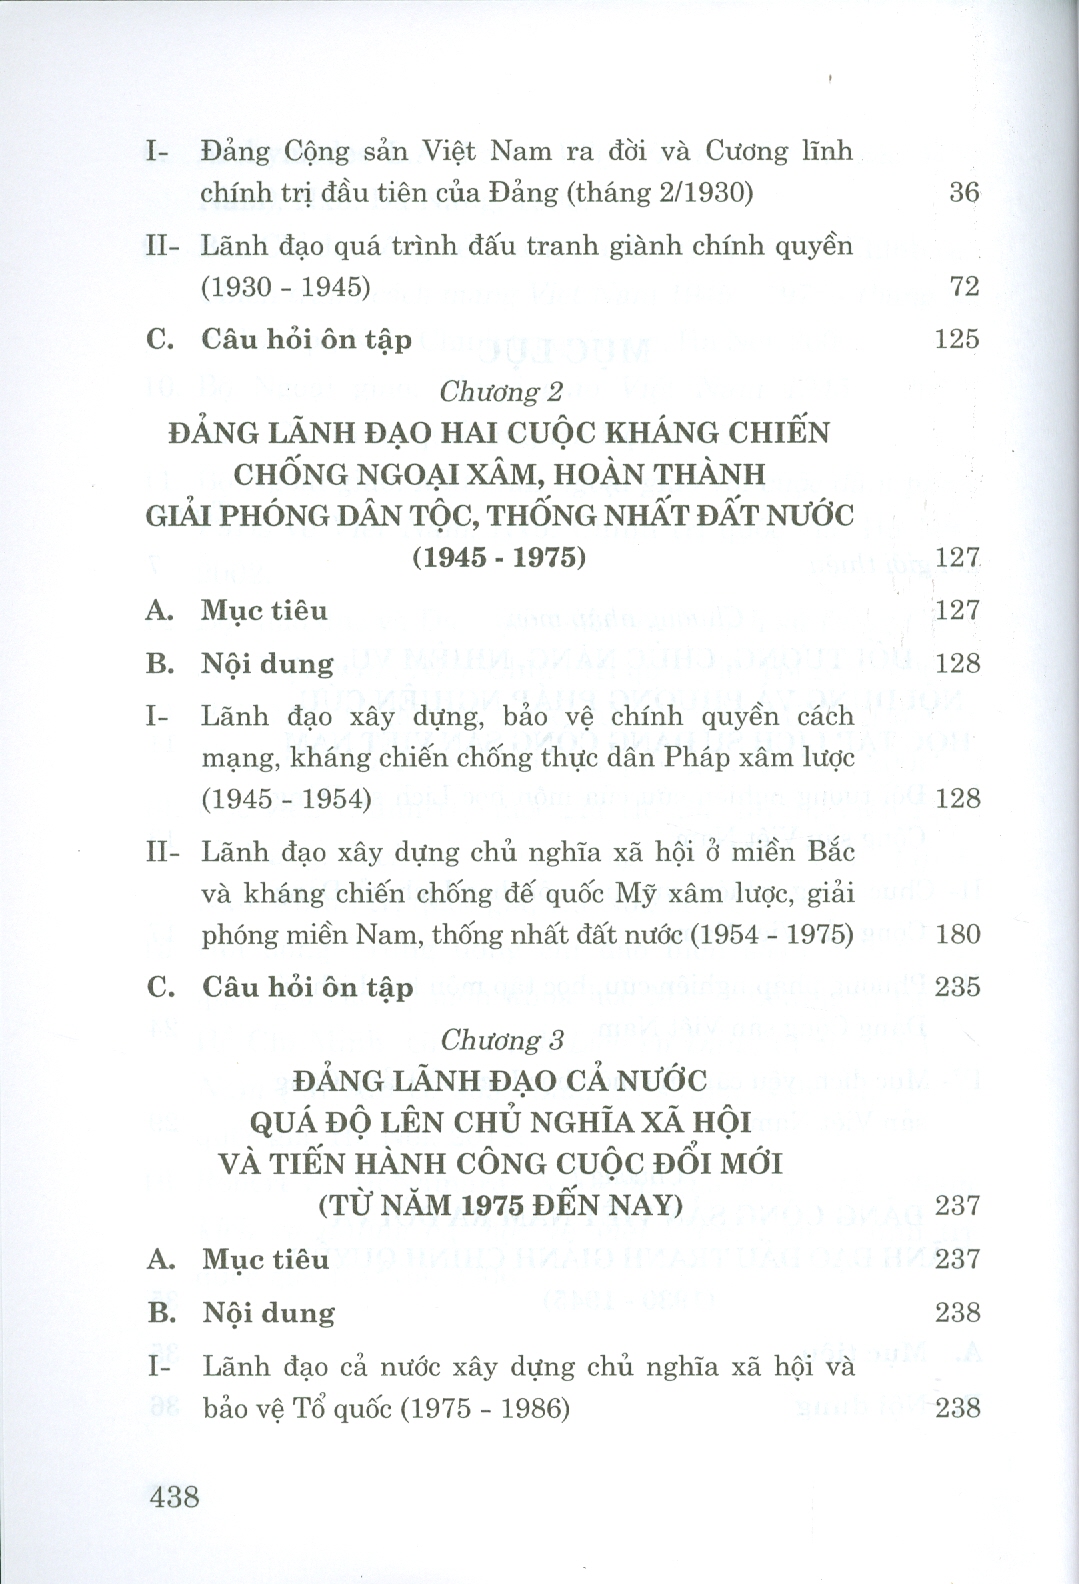 Giáo Trình Lịch Sử Đảng Cộng Sản Việt Nam (Dành Cho Bậc Đại Học Hệ Không Chuyên Lý Luận Chính Trị) - Bộ mới năm 2021